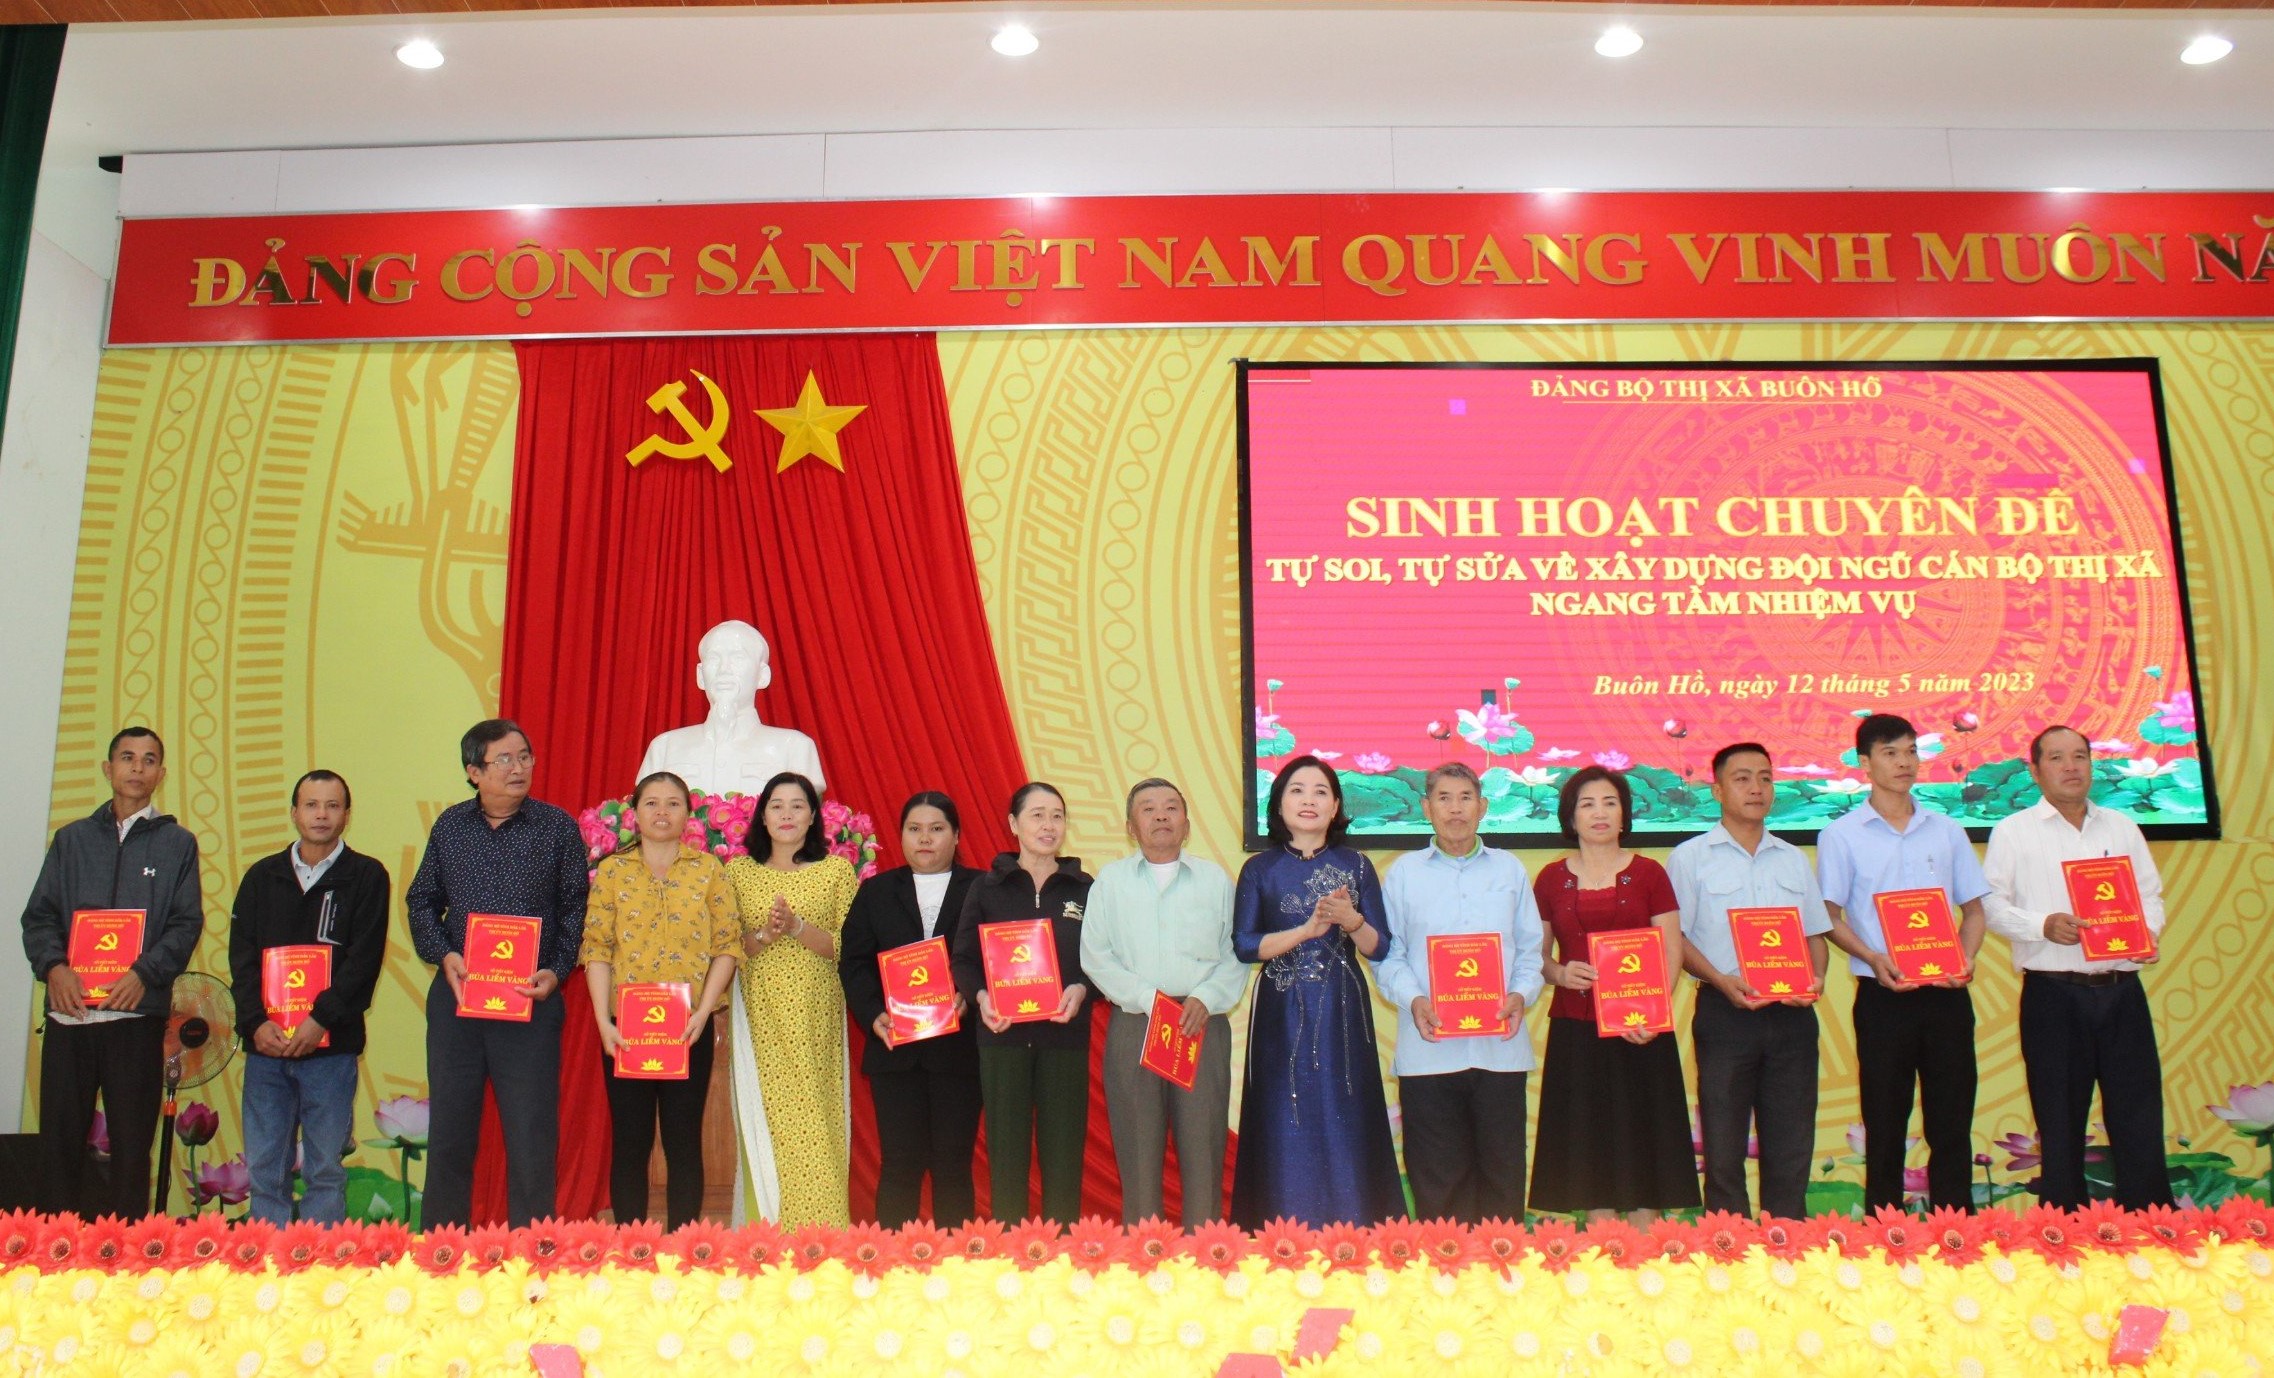 Lãnh đạo Thị ủy Buôn Hồ trao tặng "Sổ tiết kiệm Búa liềm vàng" cho các đảng viên có hoàn cảnh khó khăn.